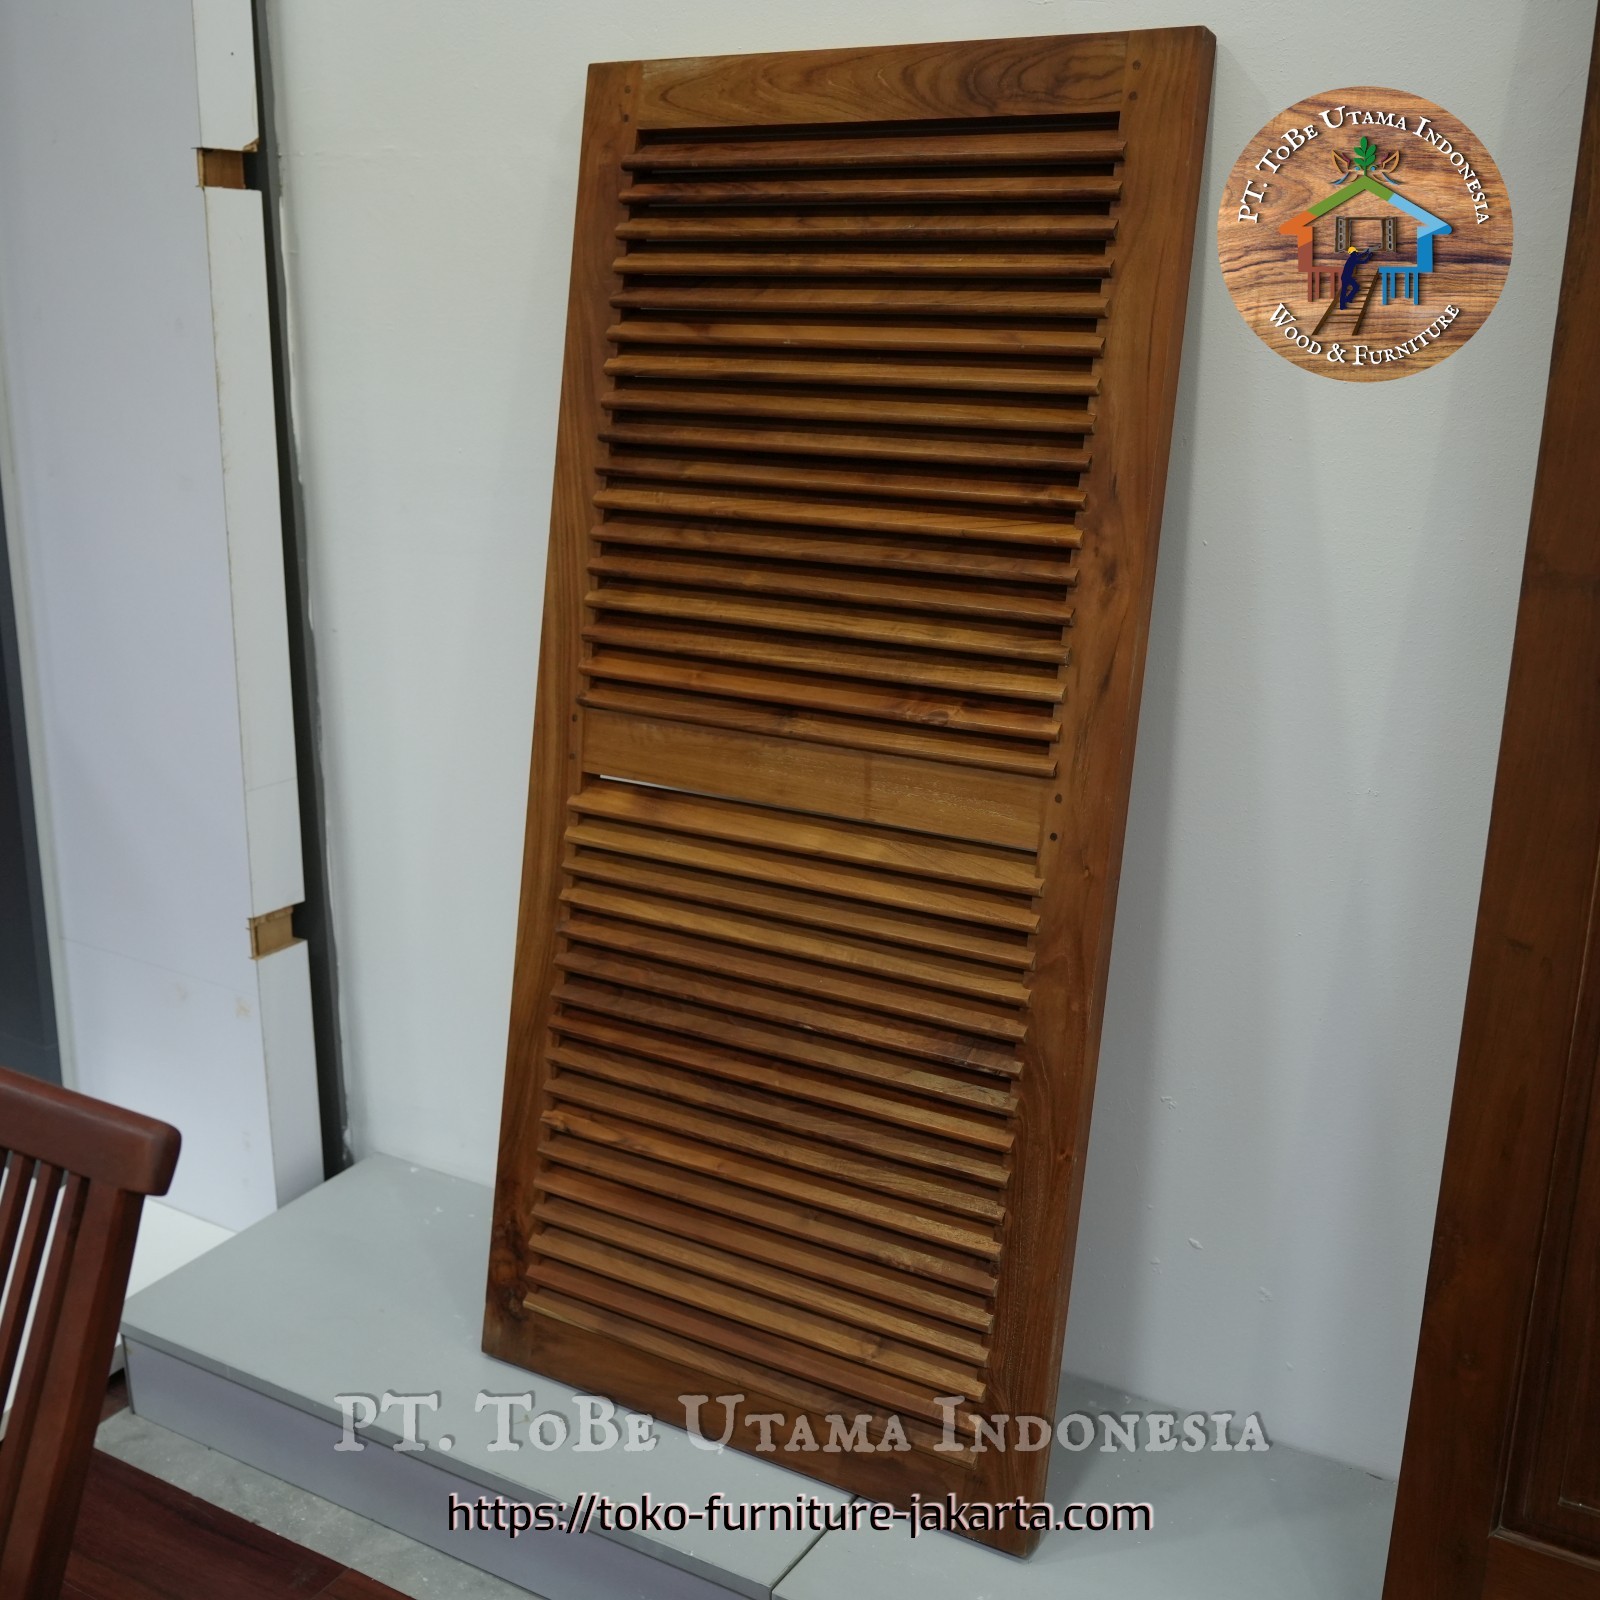 Doors: Wood Teak Door's Antique Indonesia made of teakwood (image 1 of 2).